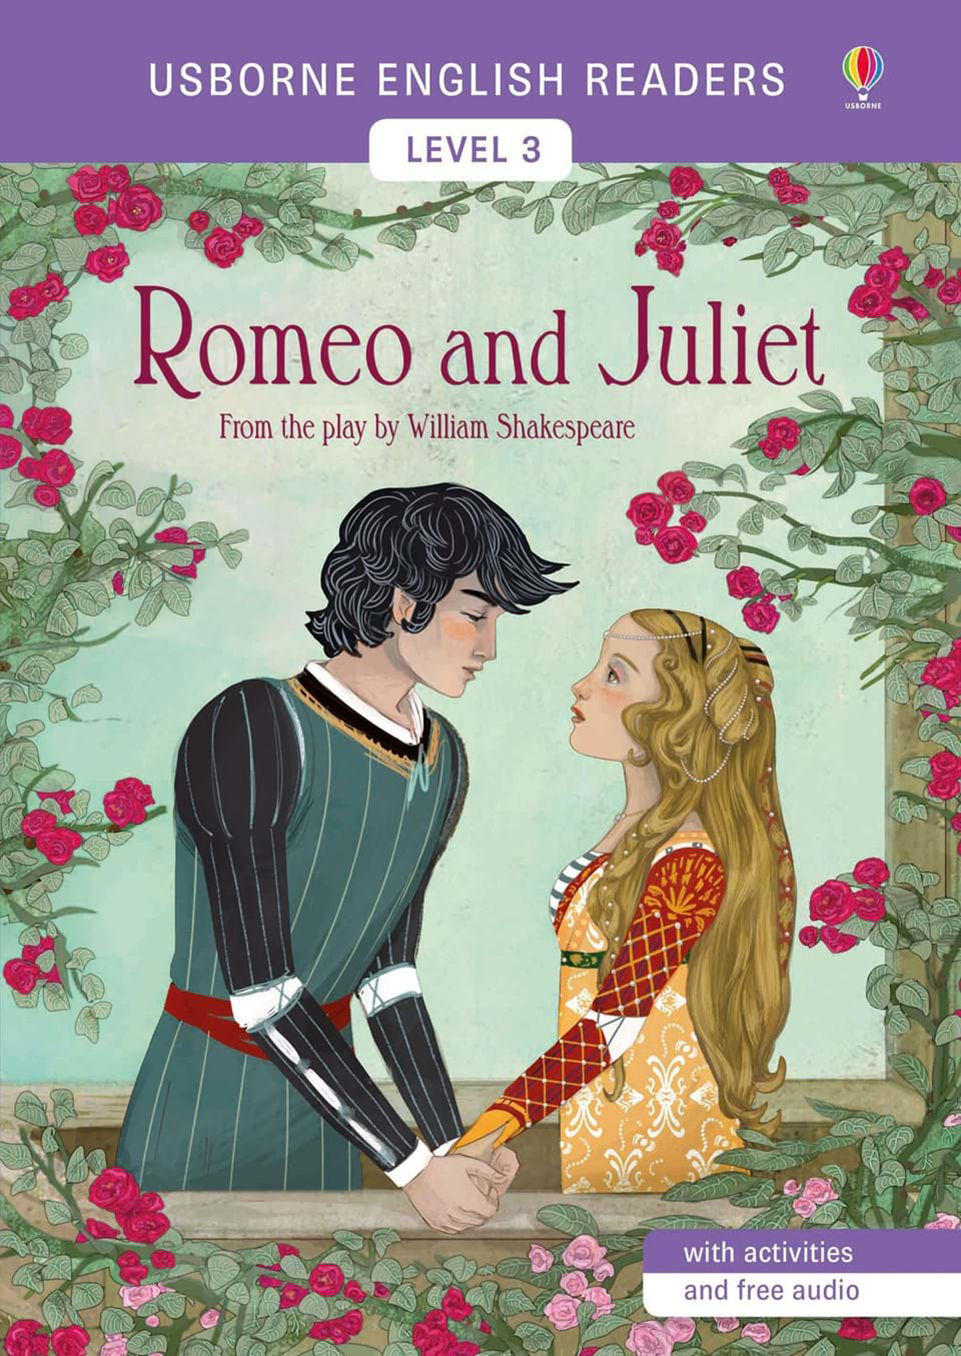 Εκδόσεις Usborne Publishing - Usborne English Readers:Romeo and Juliet (with activities and free audio)